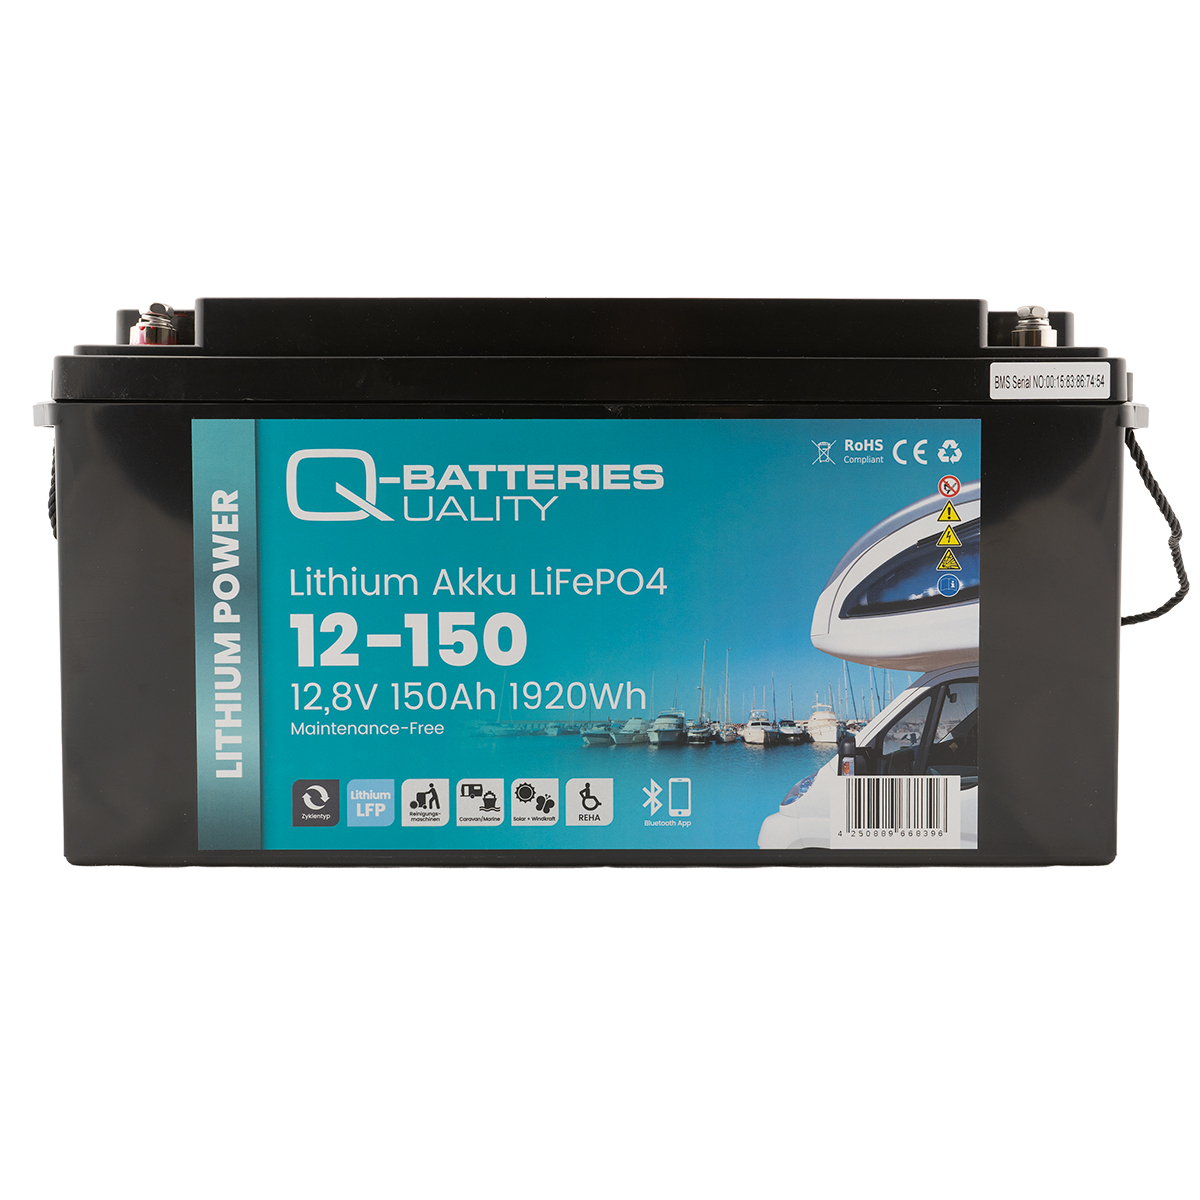 Q-Batteries Lithium Akku 12-150 12,8V 150Ah 1920Wh LiFePO4 ab 862,35 €